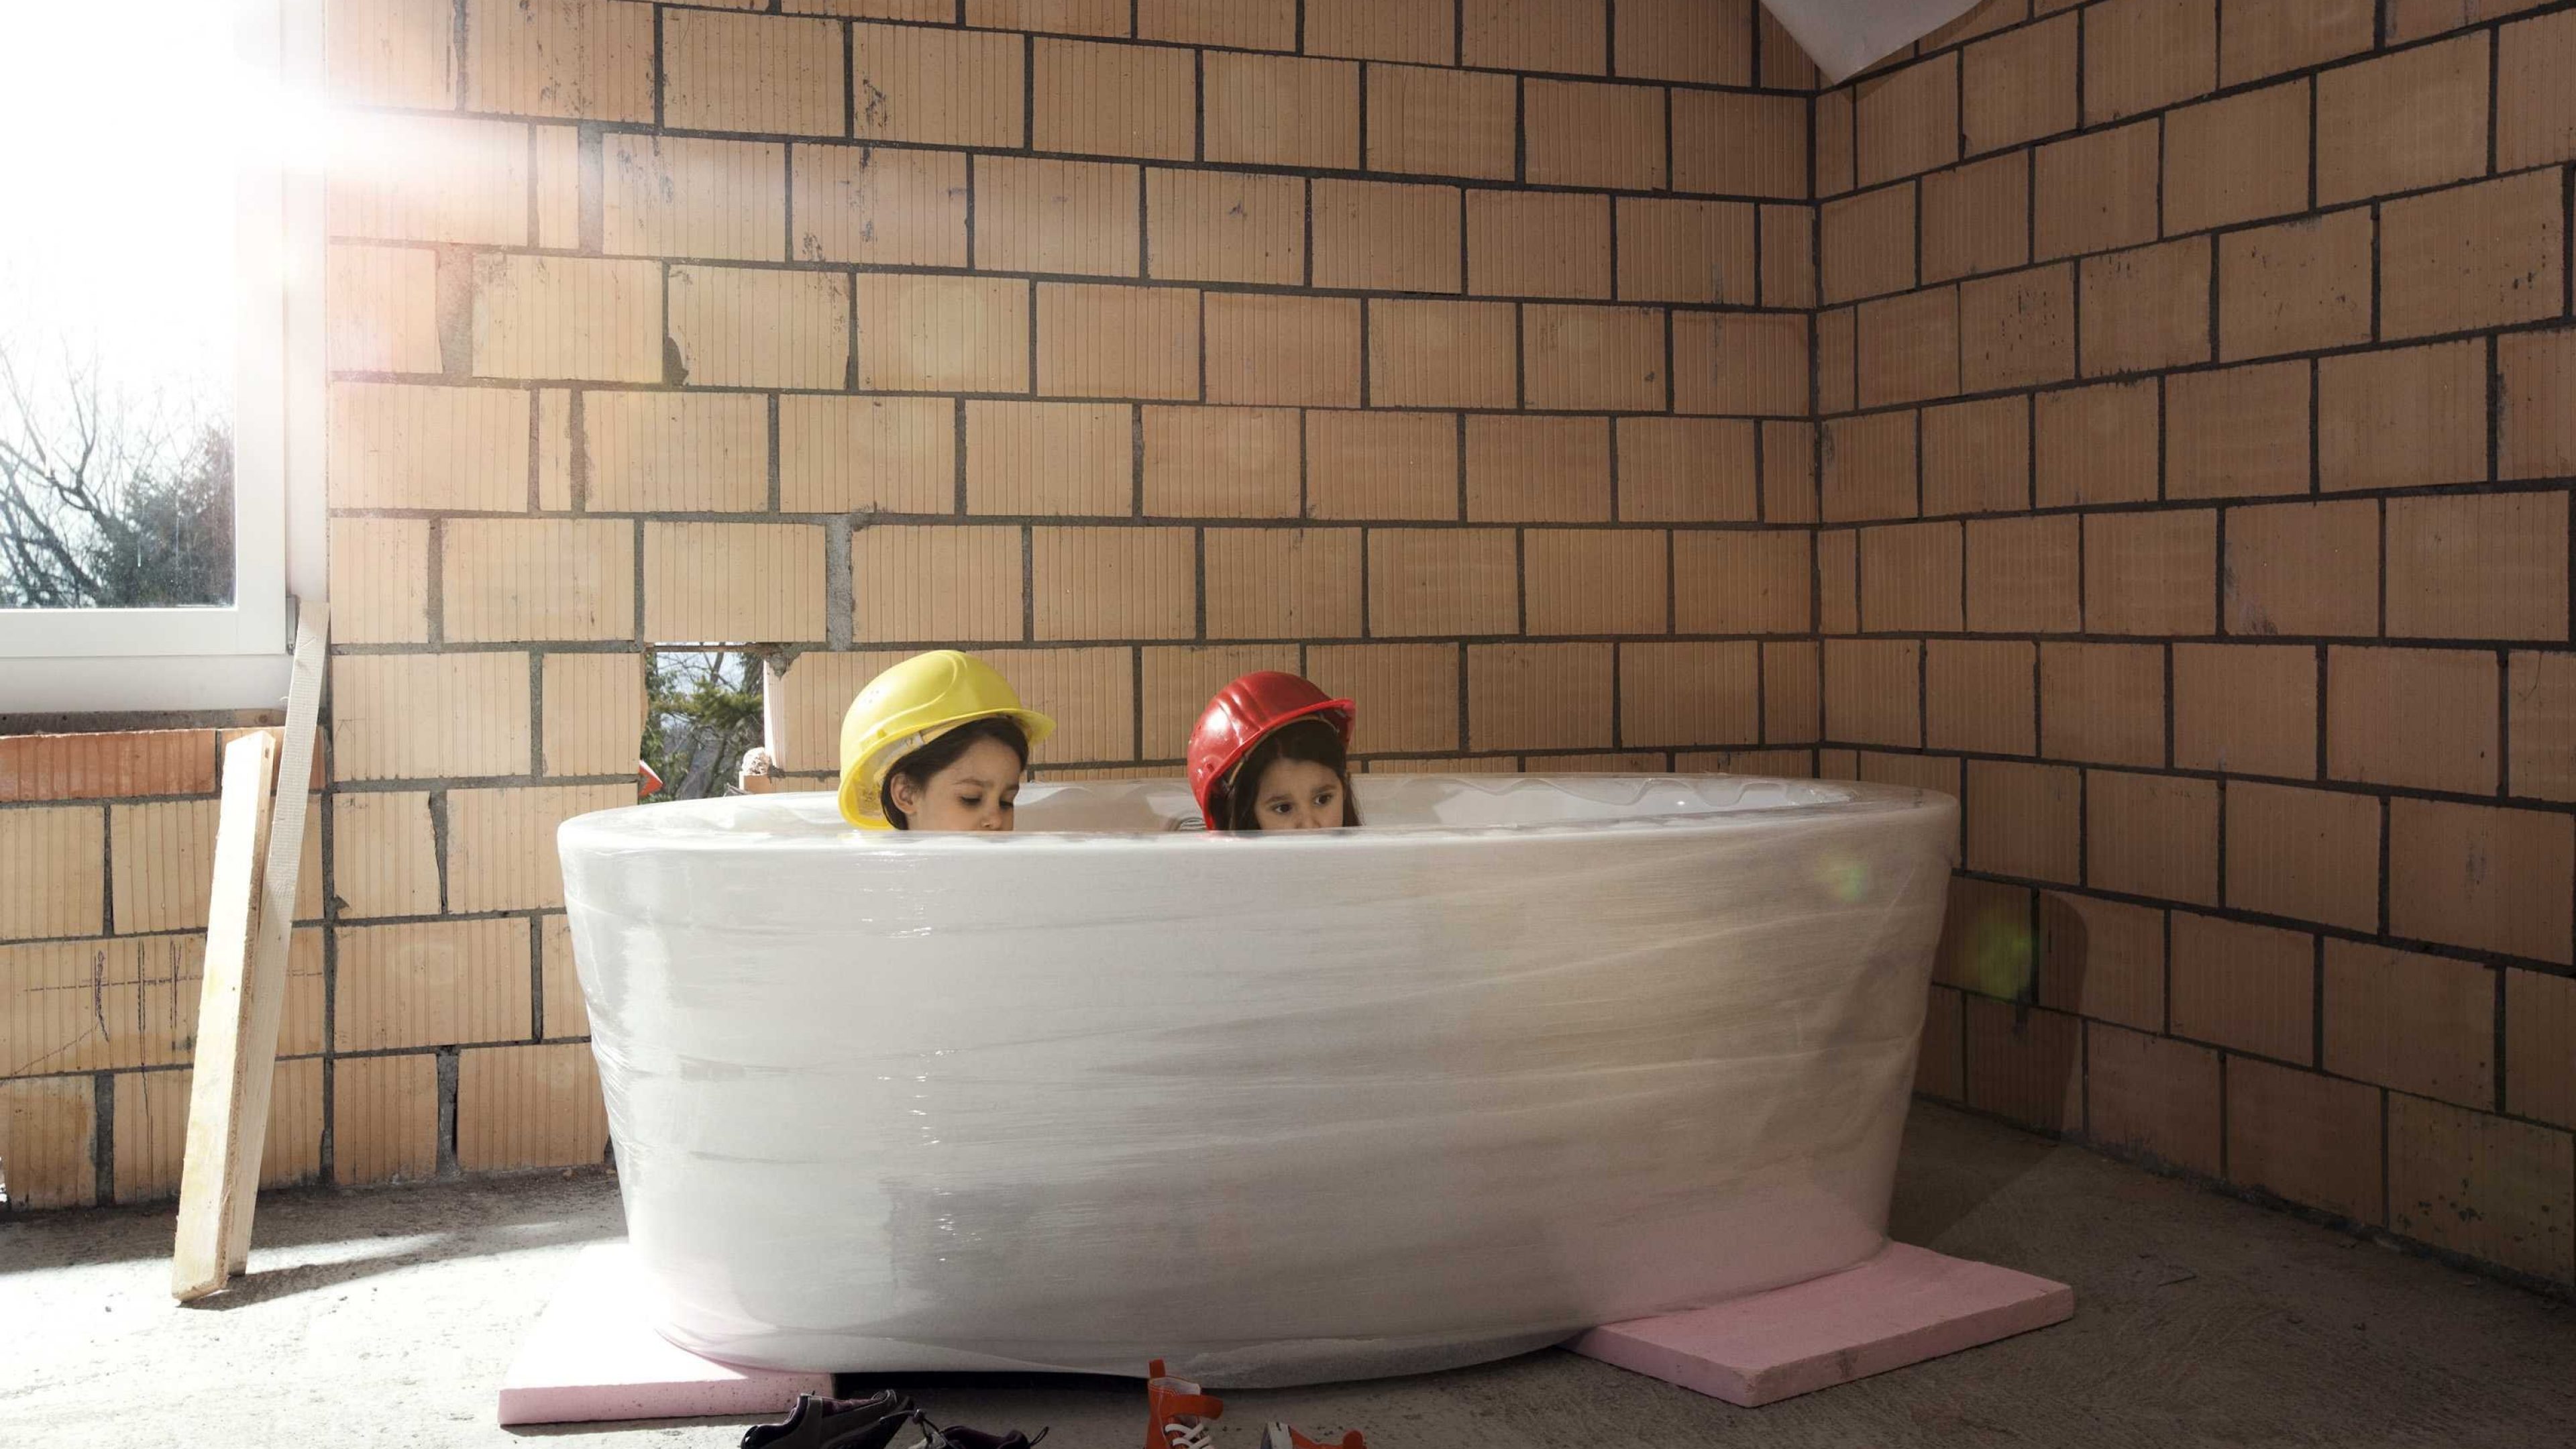 Kinder sitzen in einer Badewanne im Rohbau eines Hauses.